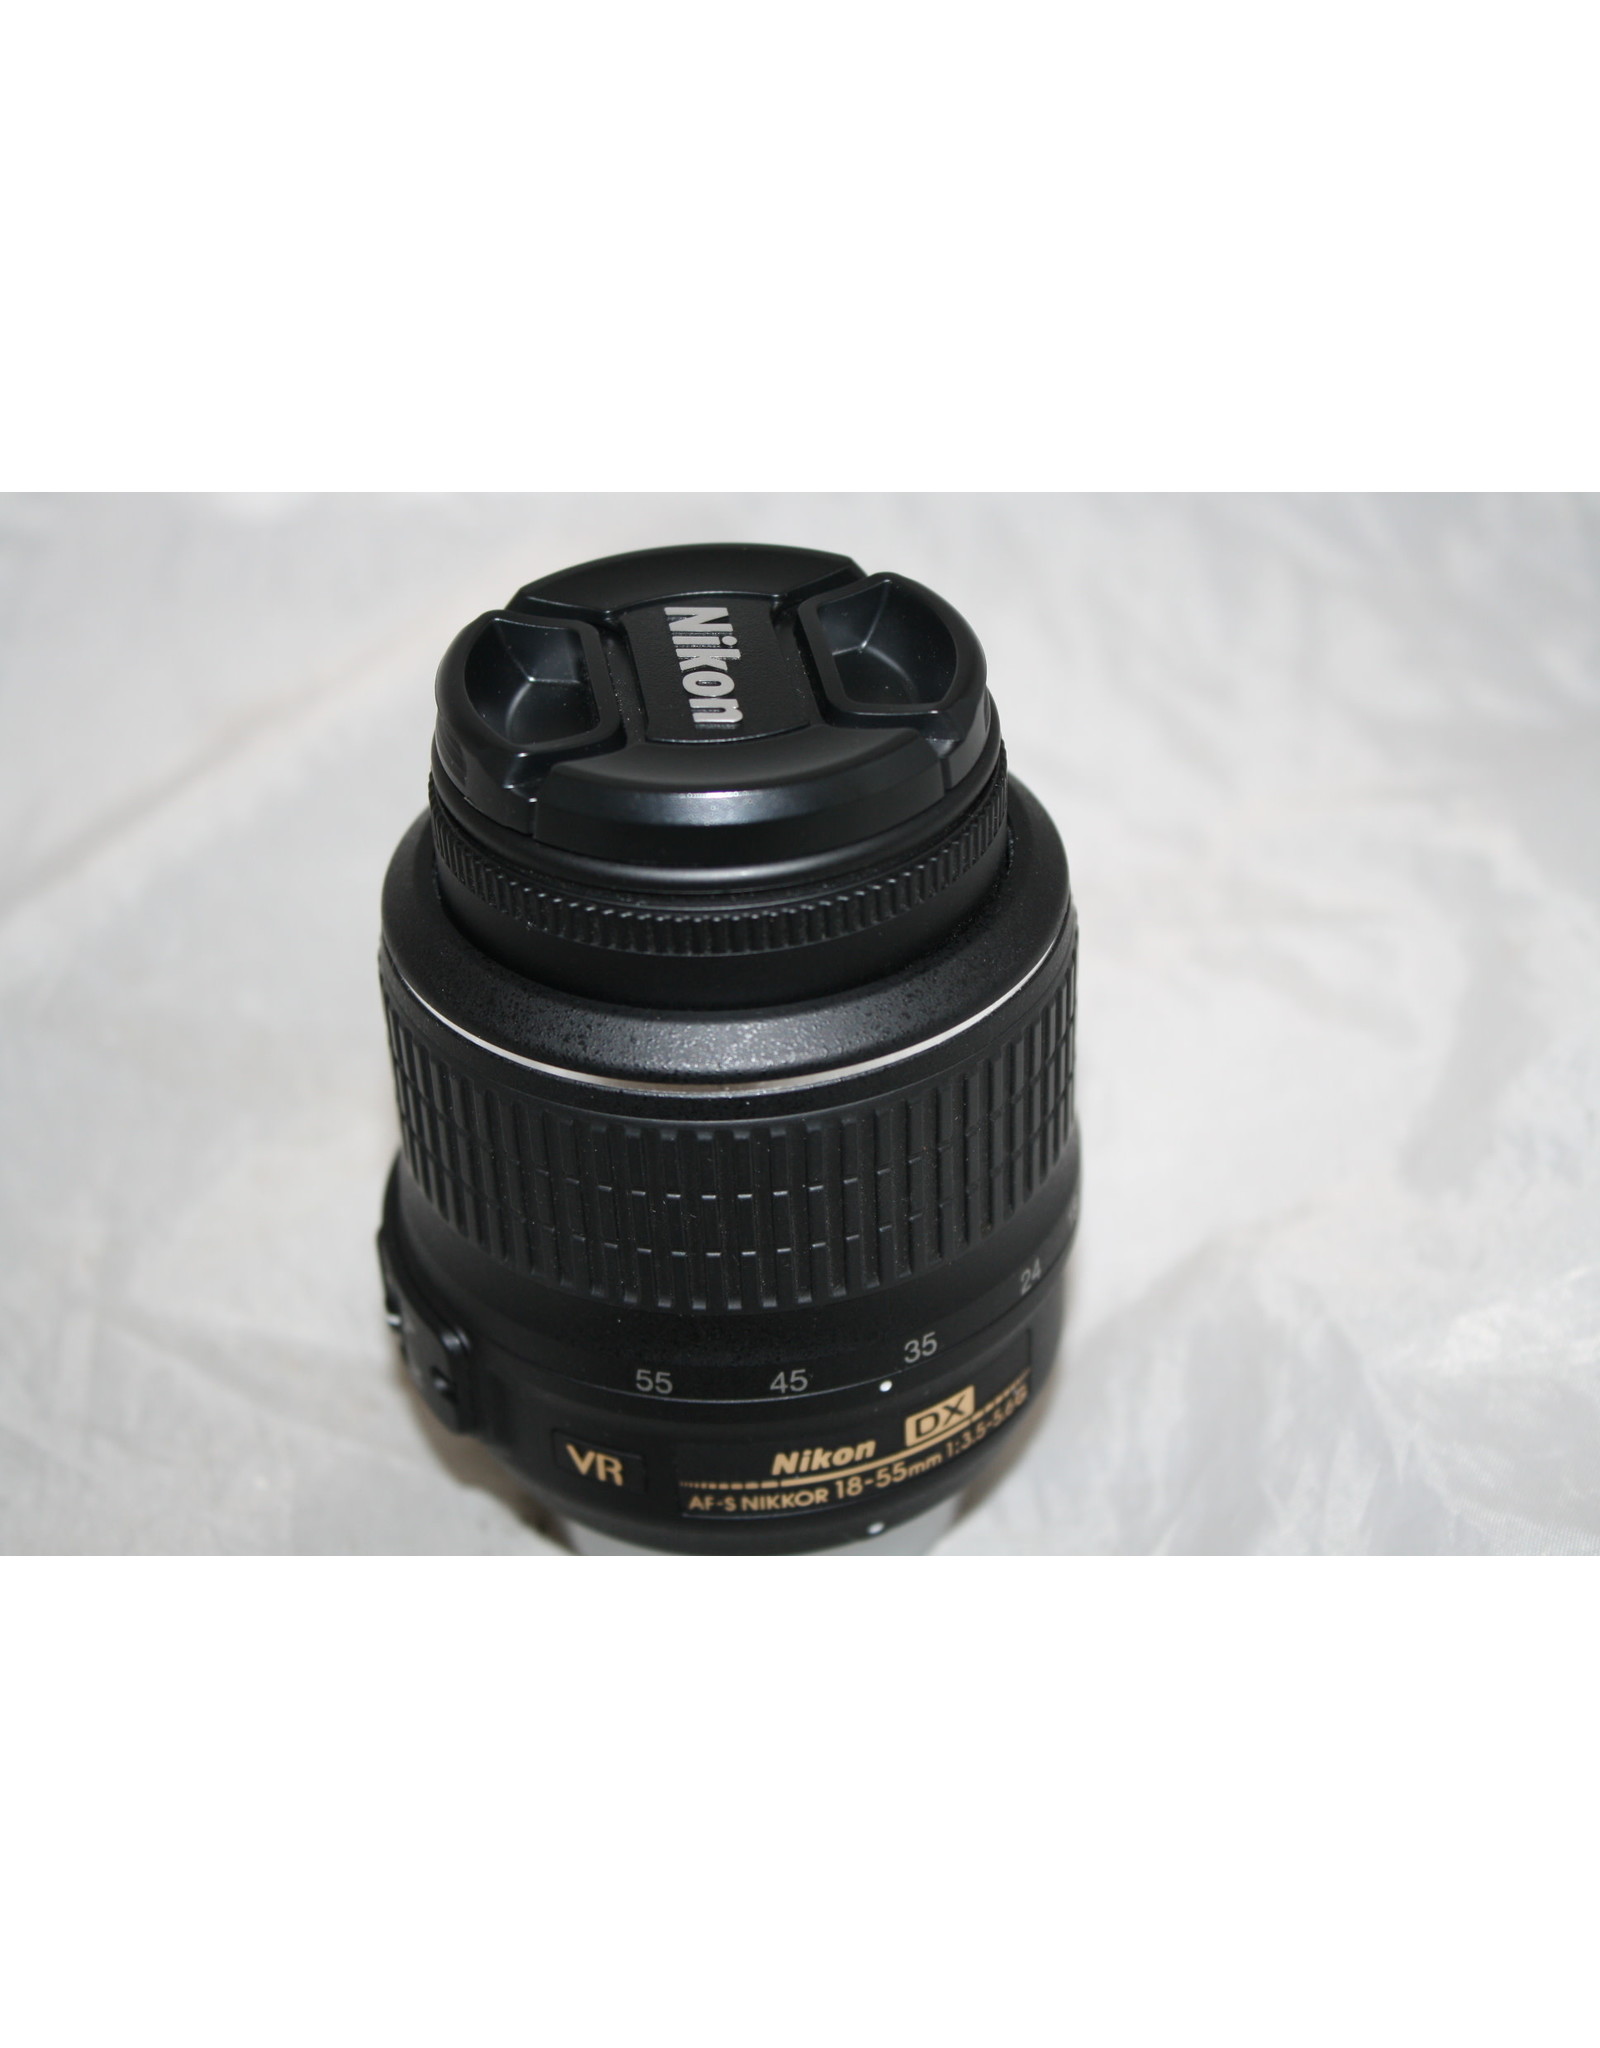 Nikon Af S Dx Zoom Nikkor 18 55mm F 3 5 5 6g Vr Camera Concepts Telescope Solutions